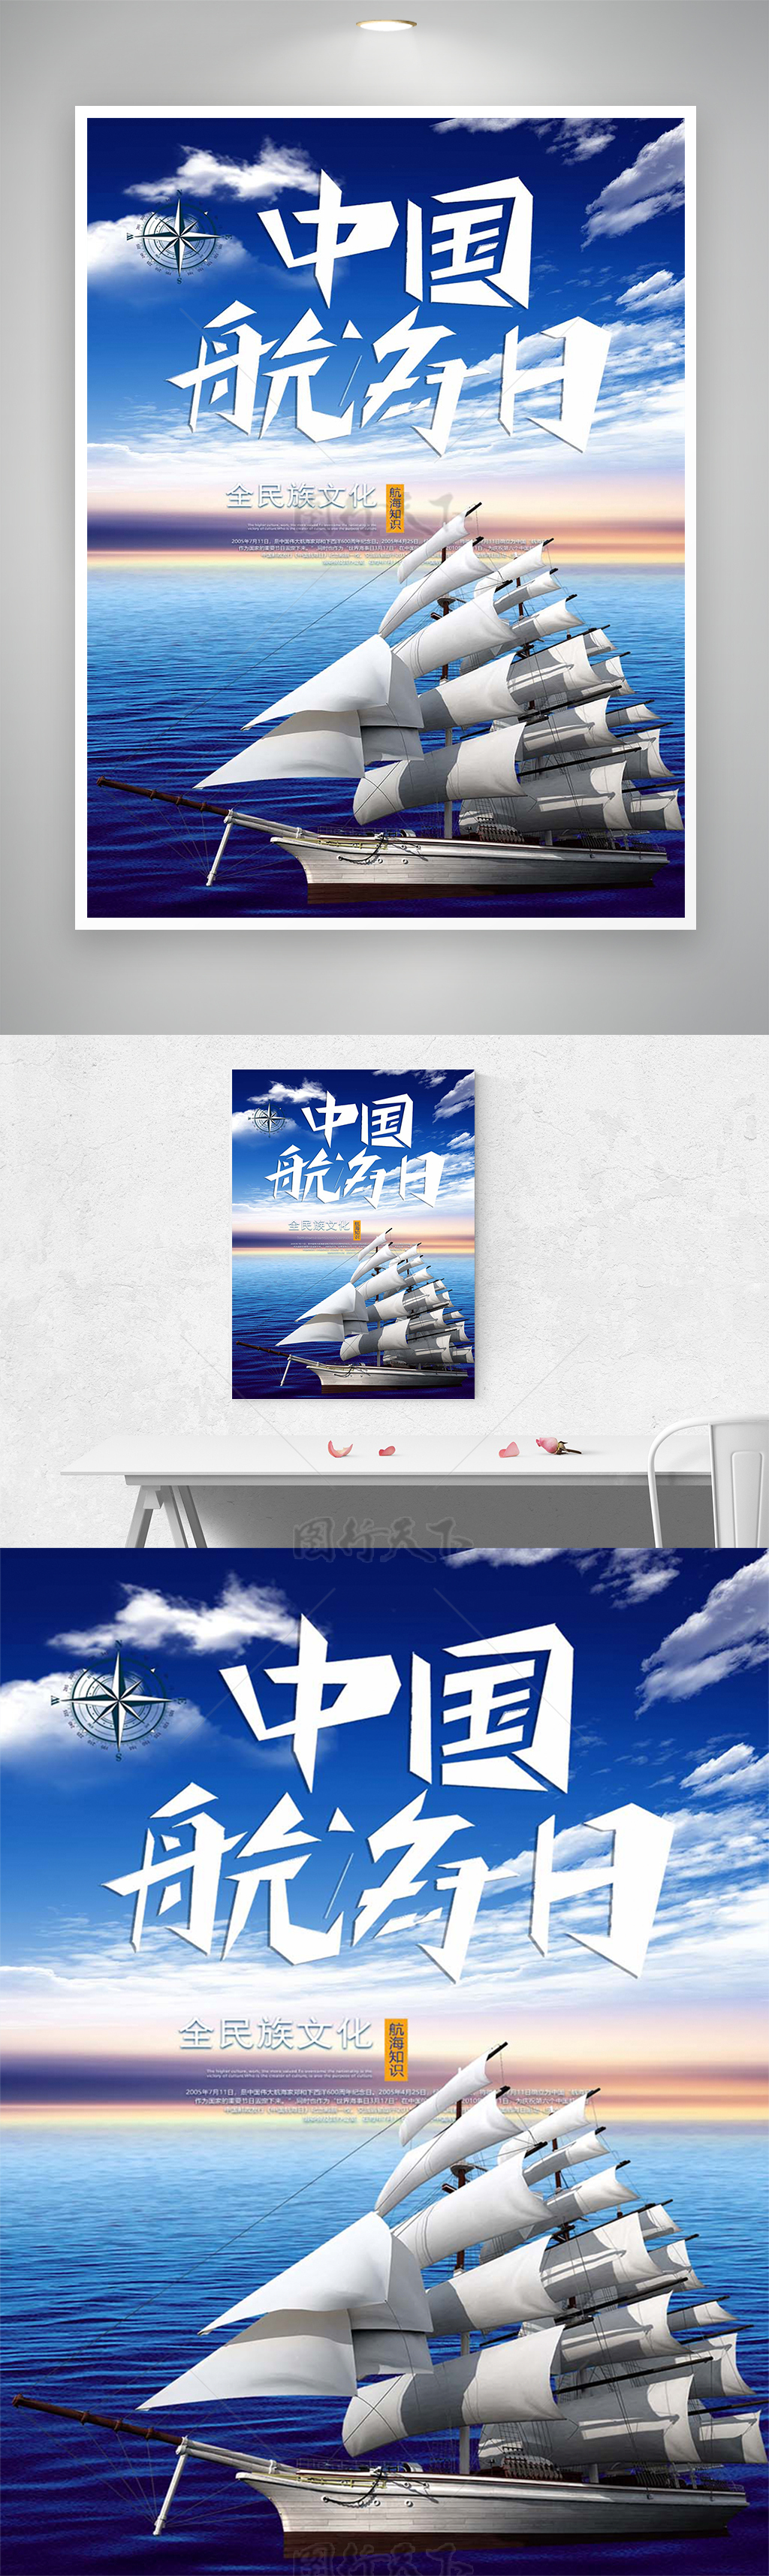 中国航海日公益节日宣传简约海报